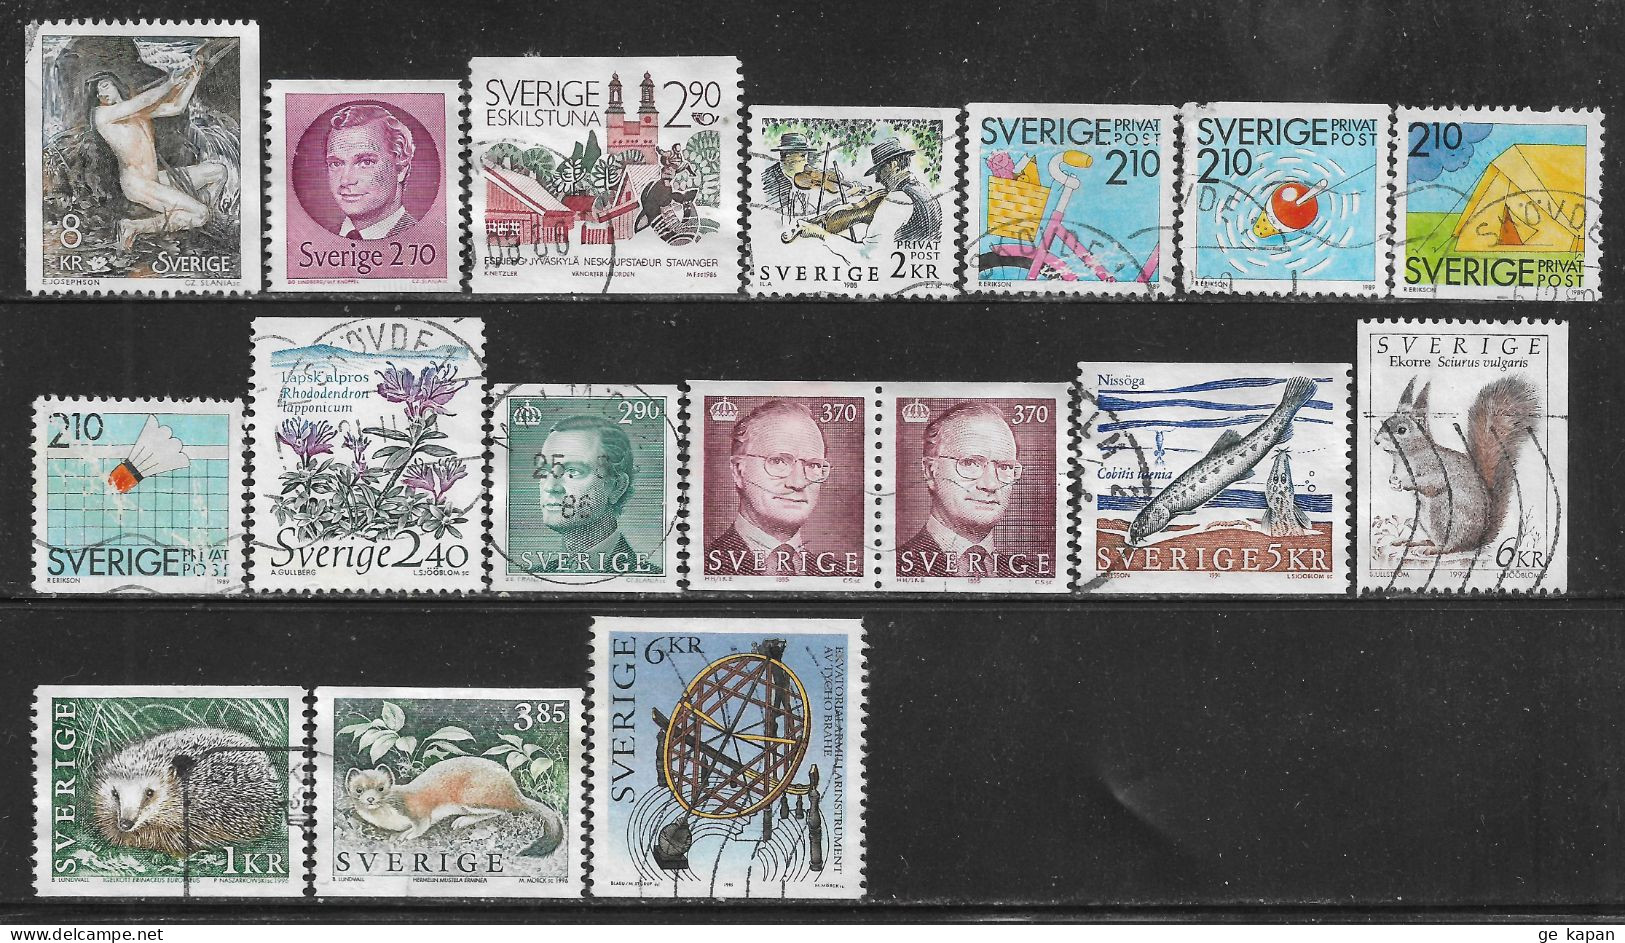 1980-96 SWEDEN 17 Used Stamps (Sc.# 1340,1372,1604,1685,1741,1743,1744,1746,1762,1785,1787,1869,1933,1926,1931) CV $7.95 - Gebruikt